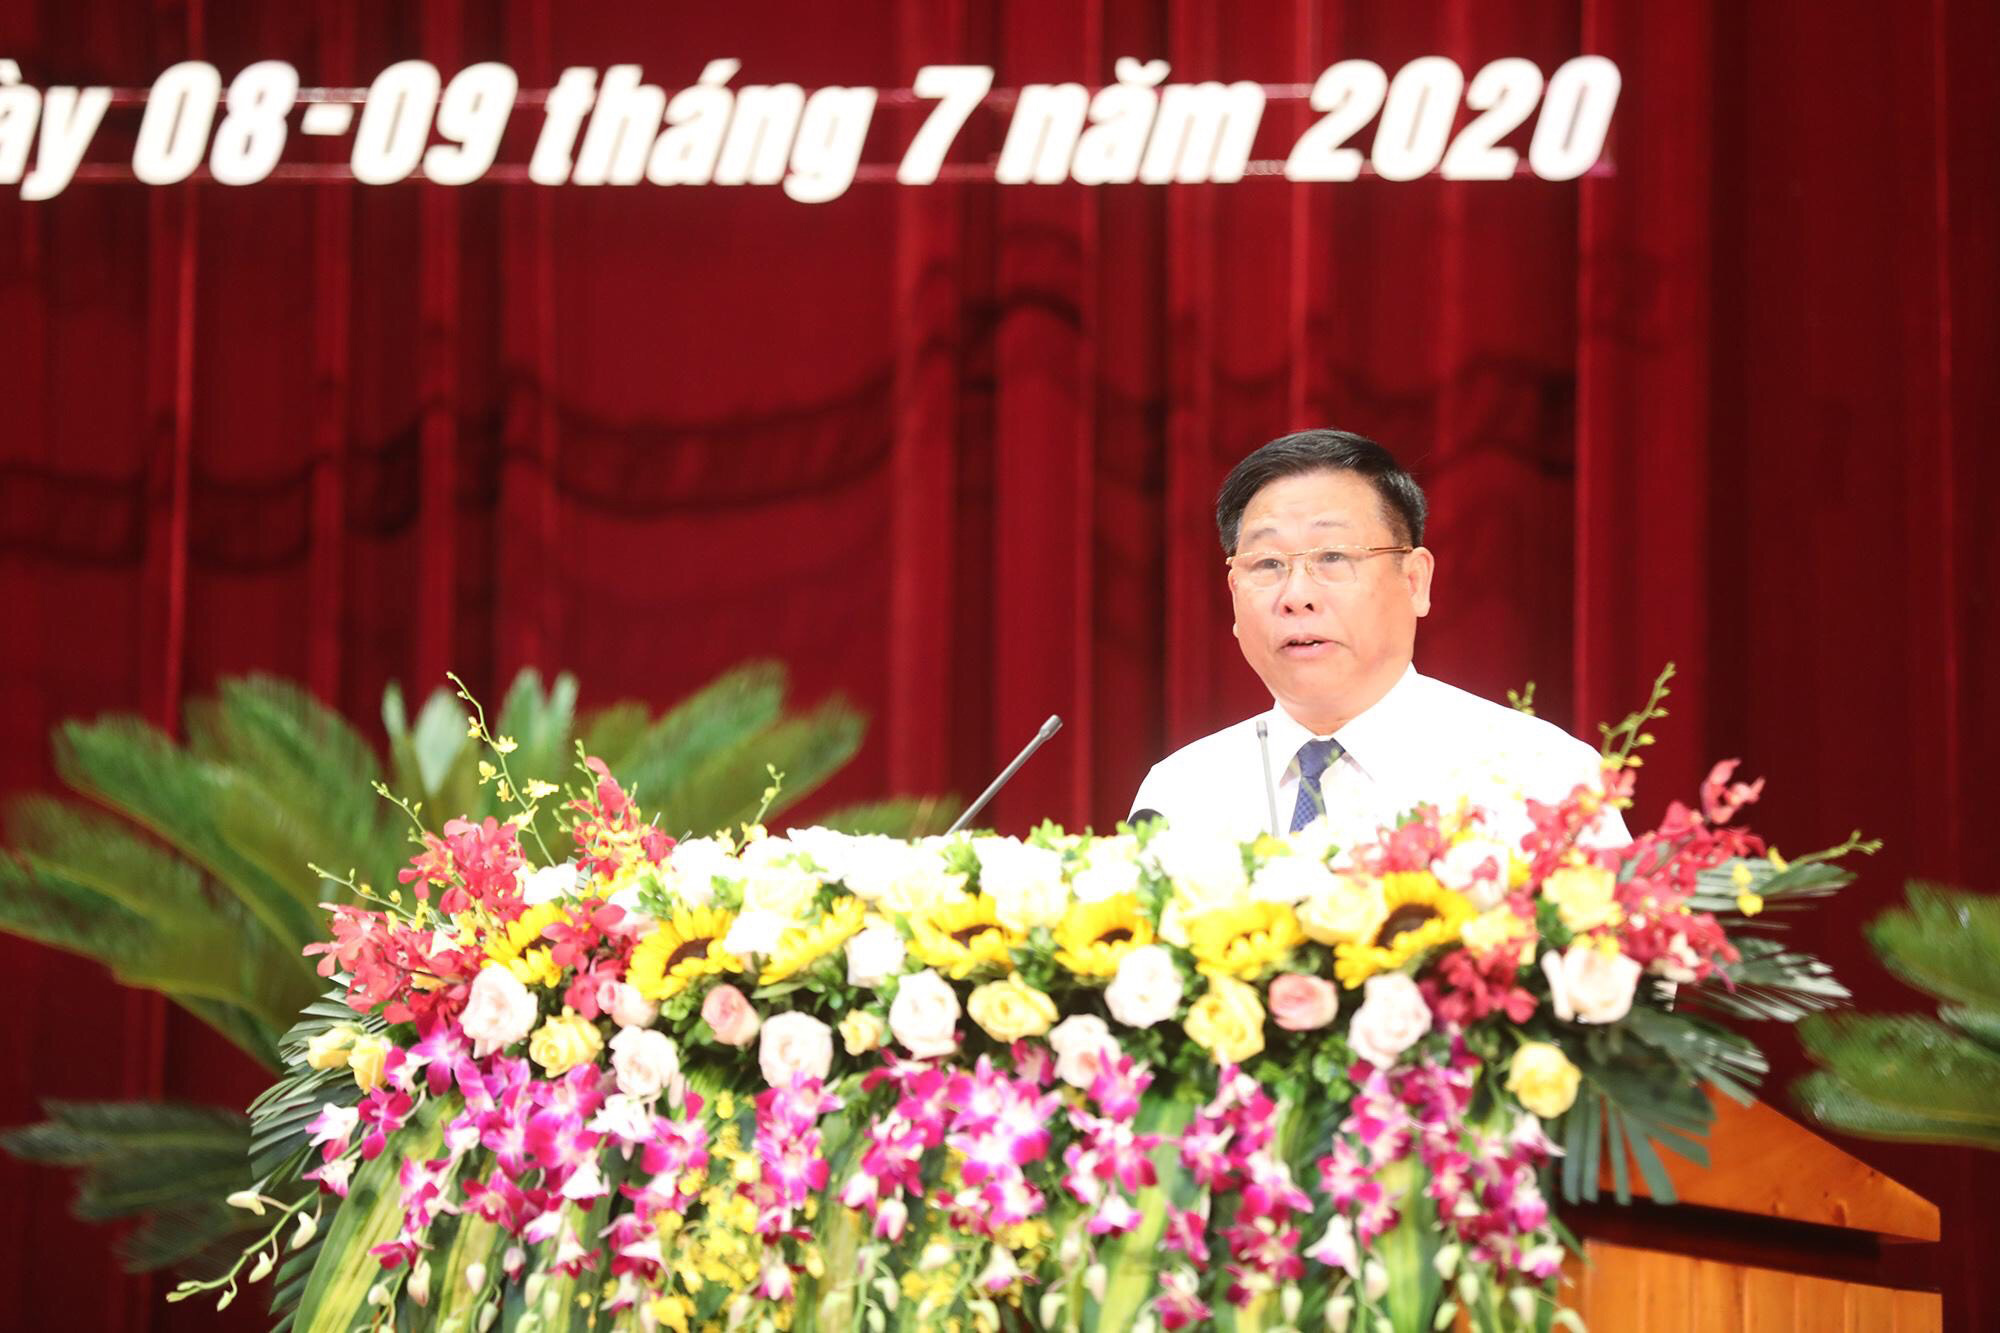 Đồng chí Nguyễn Hữu Giang, Giám đốc Sở NN&PTNT